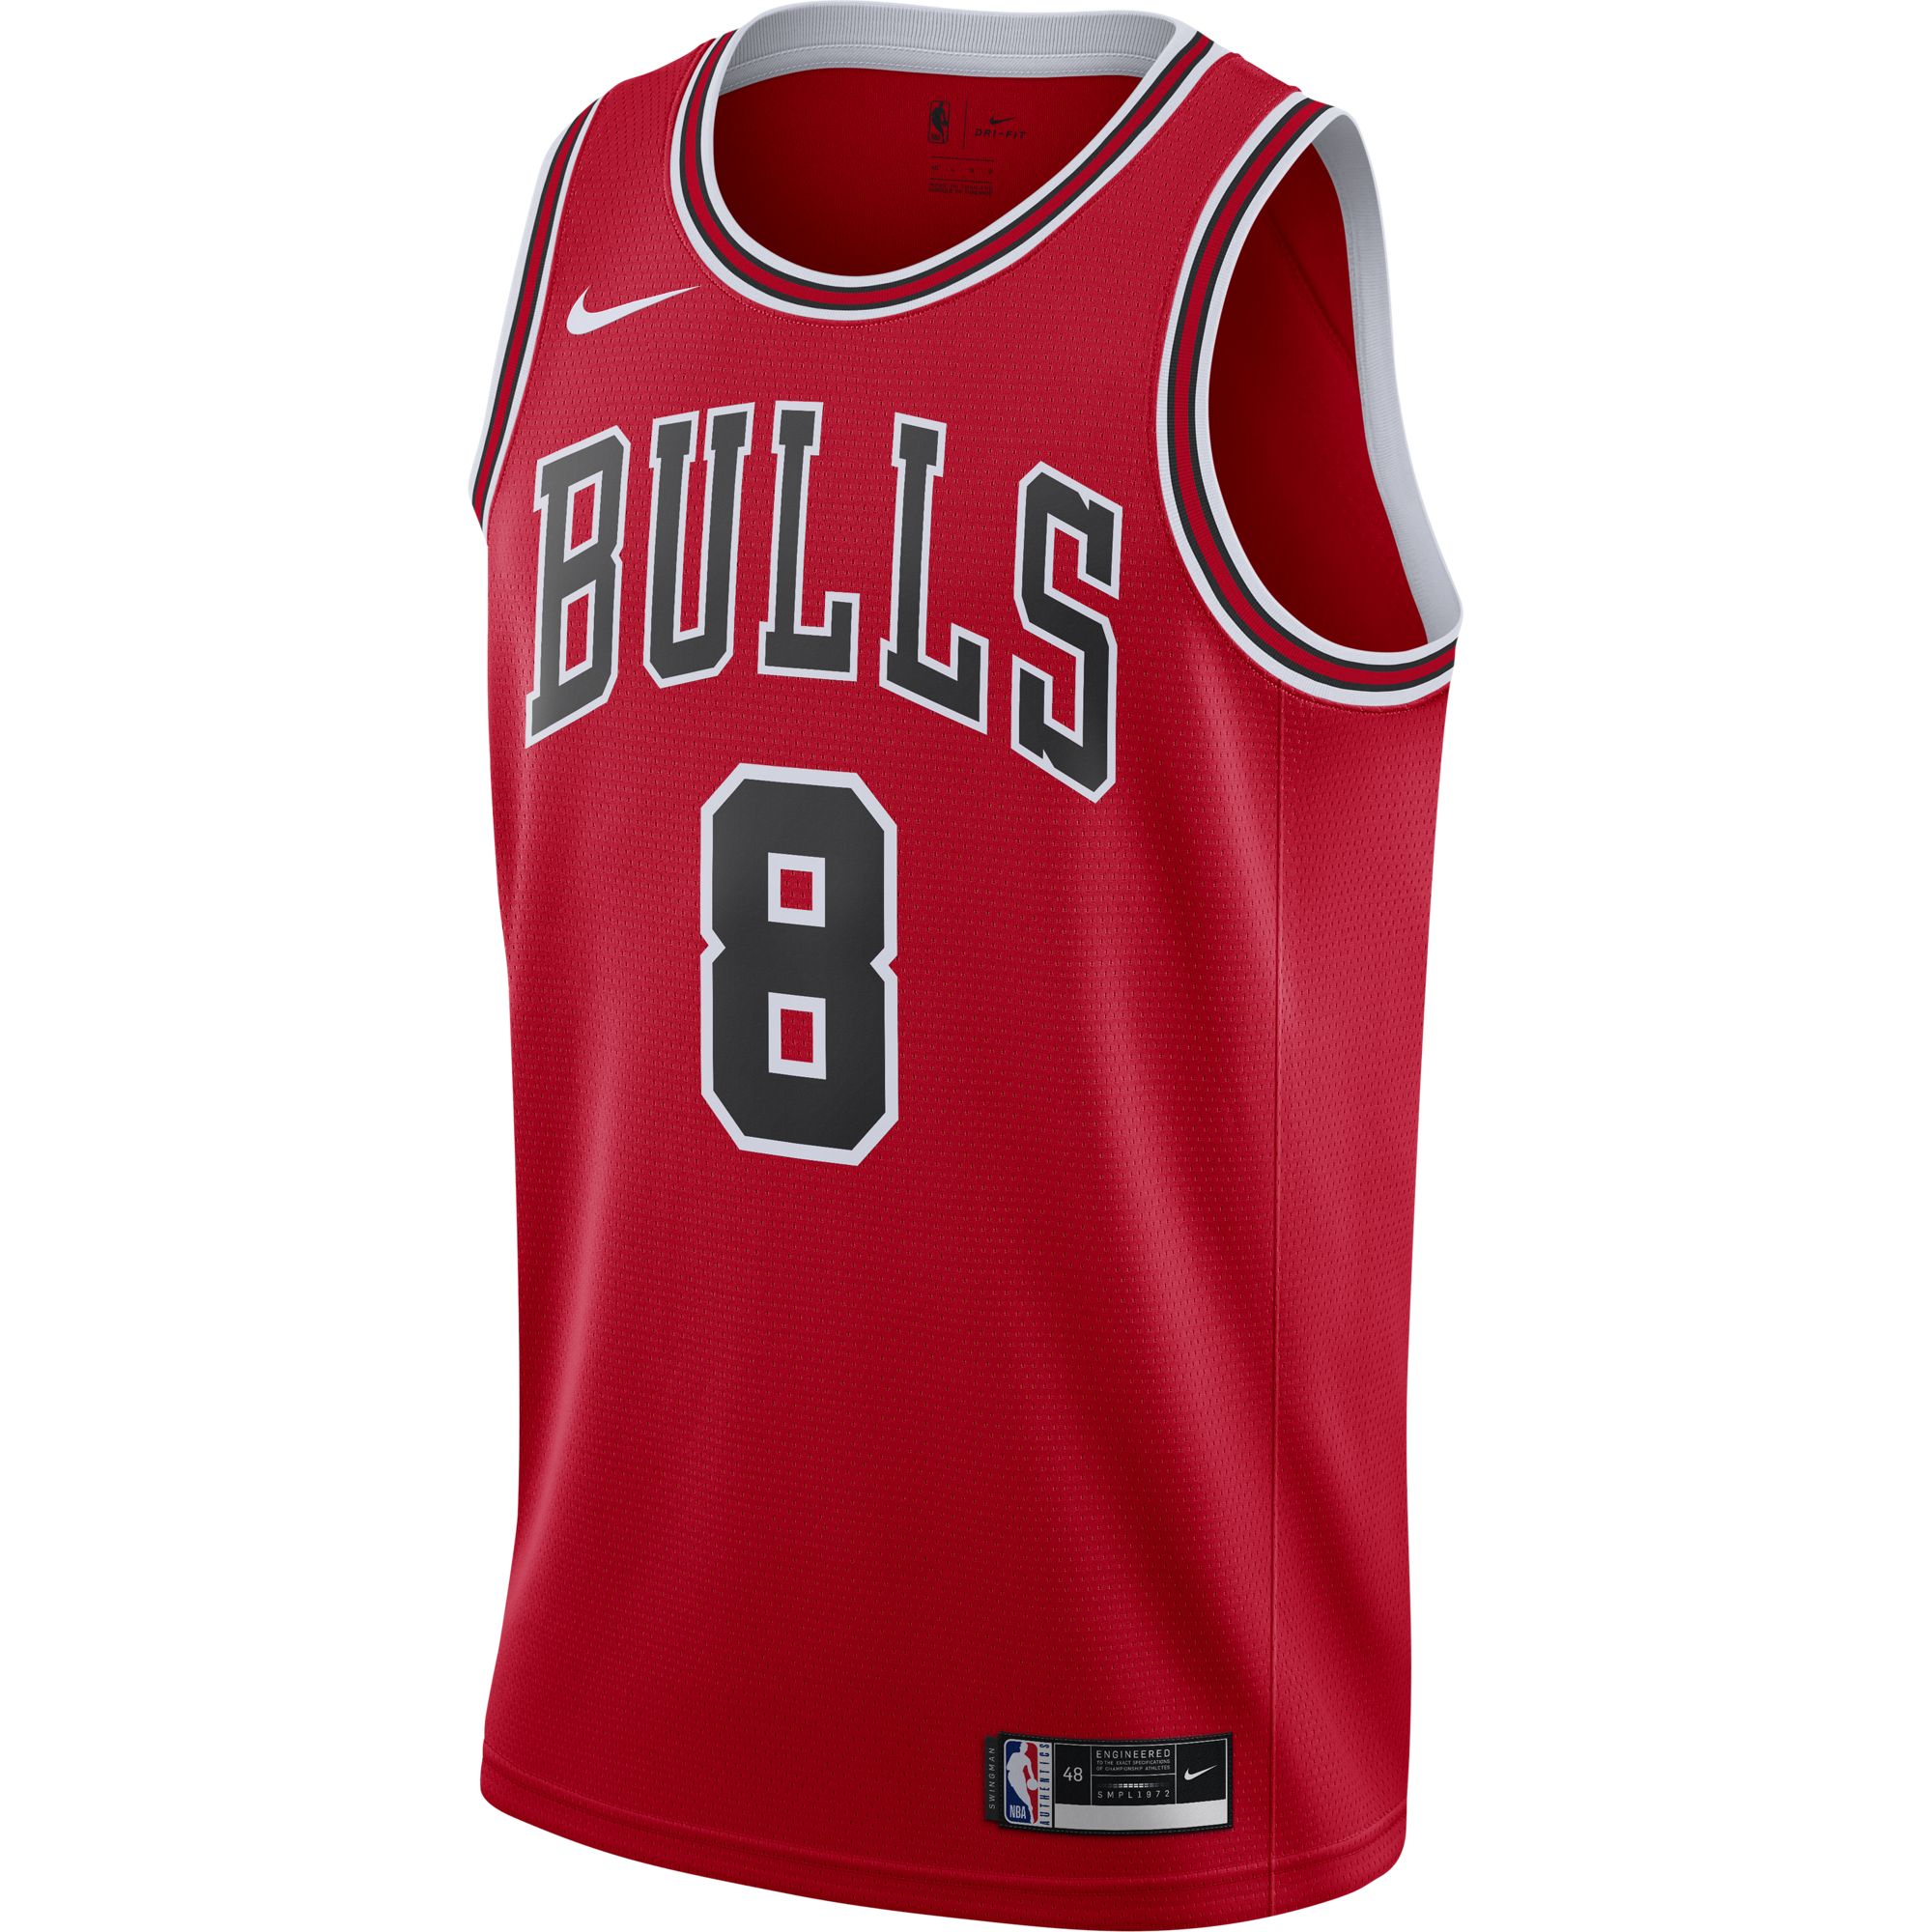 Джерси Nike Bulls Icon Edition 2020 - картинка